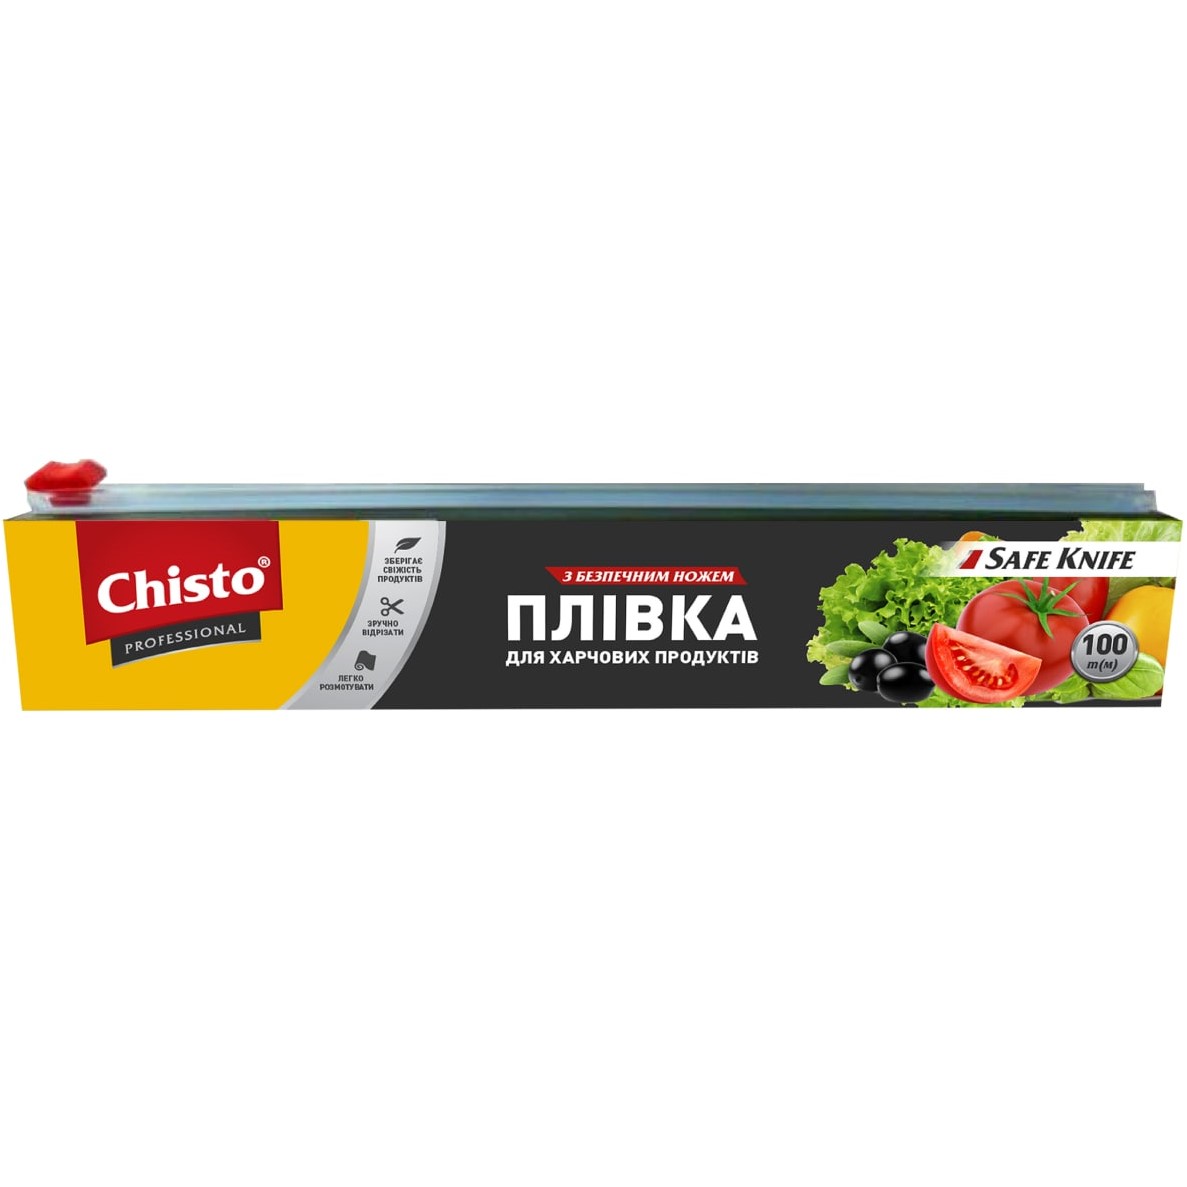 Плівка для харчових продуктів Chisto із безпечним ножем, 100 м - фото 1